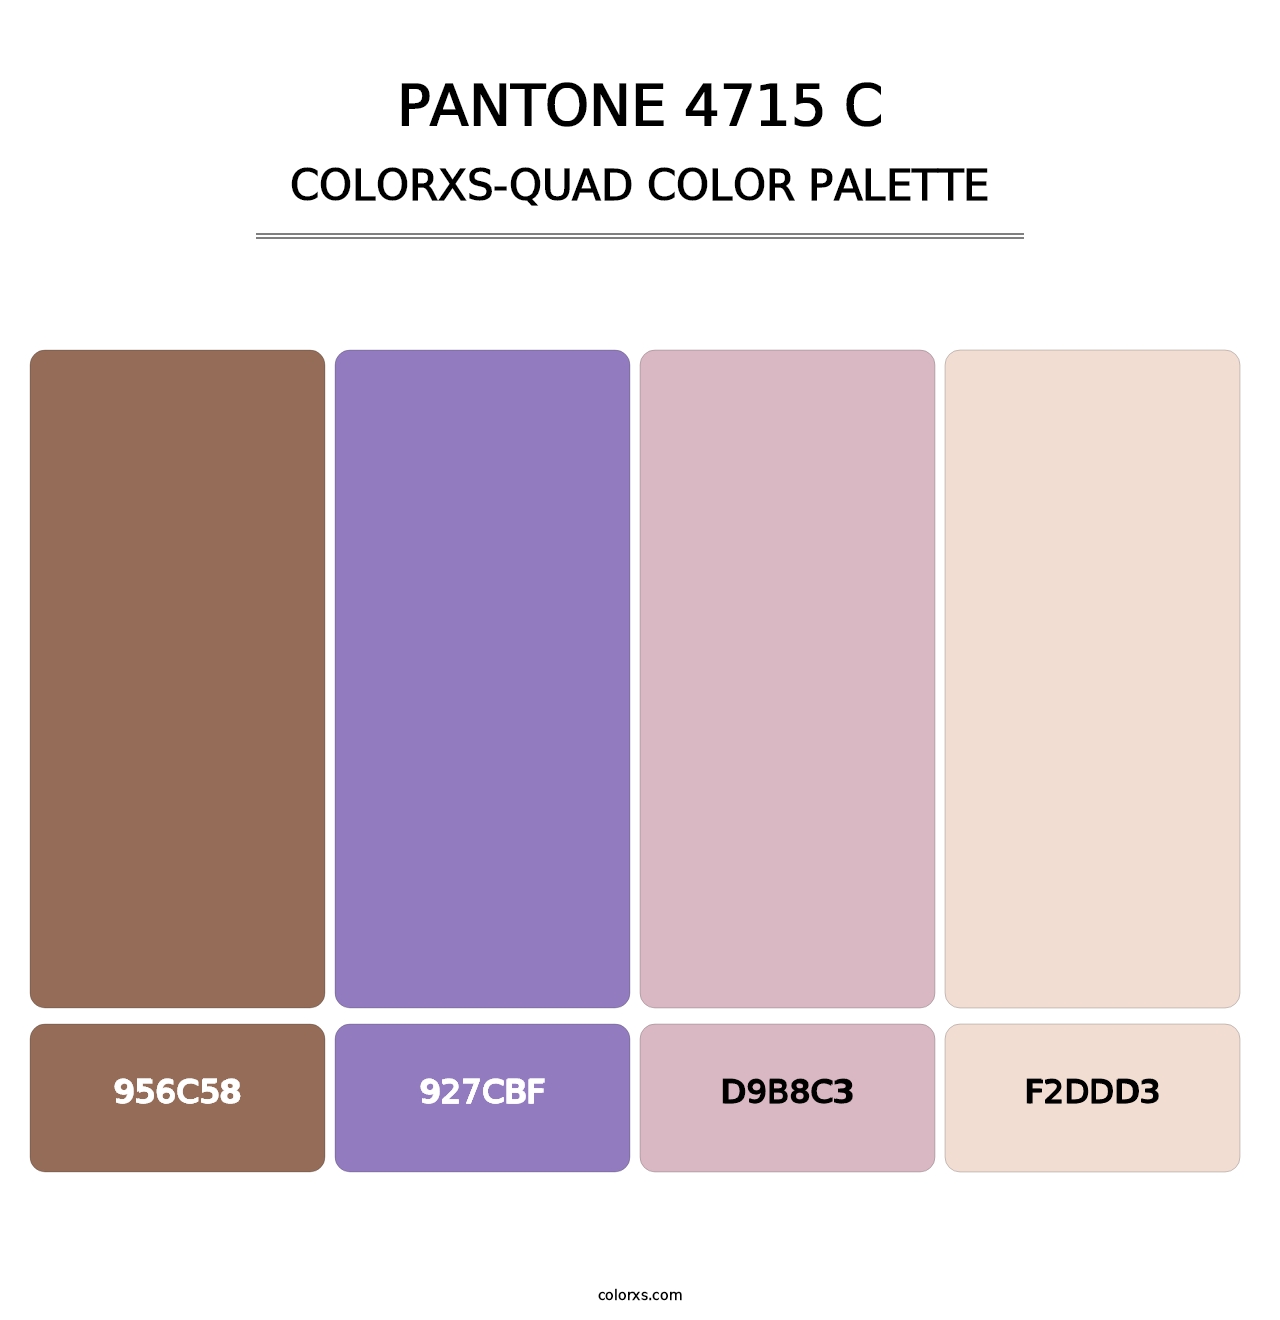 PANTONE 4715 C - Colorxs Quad Palette